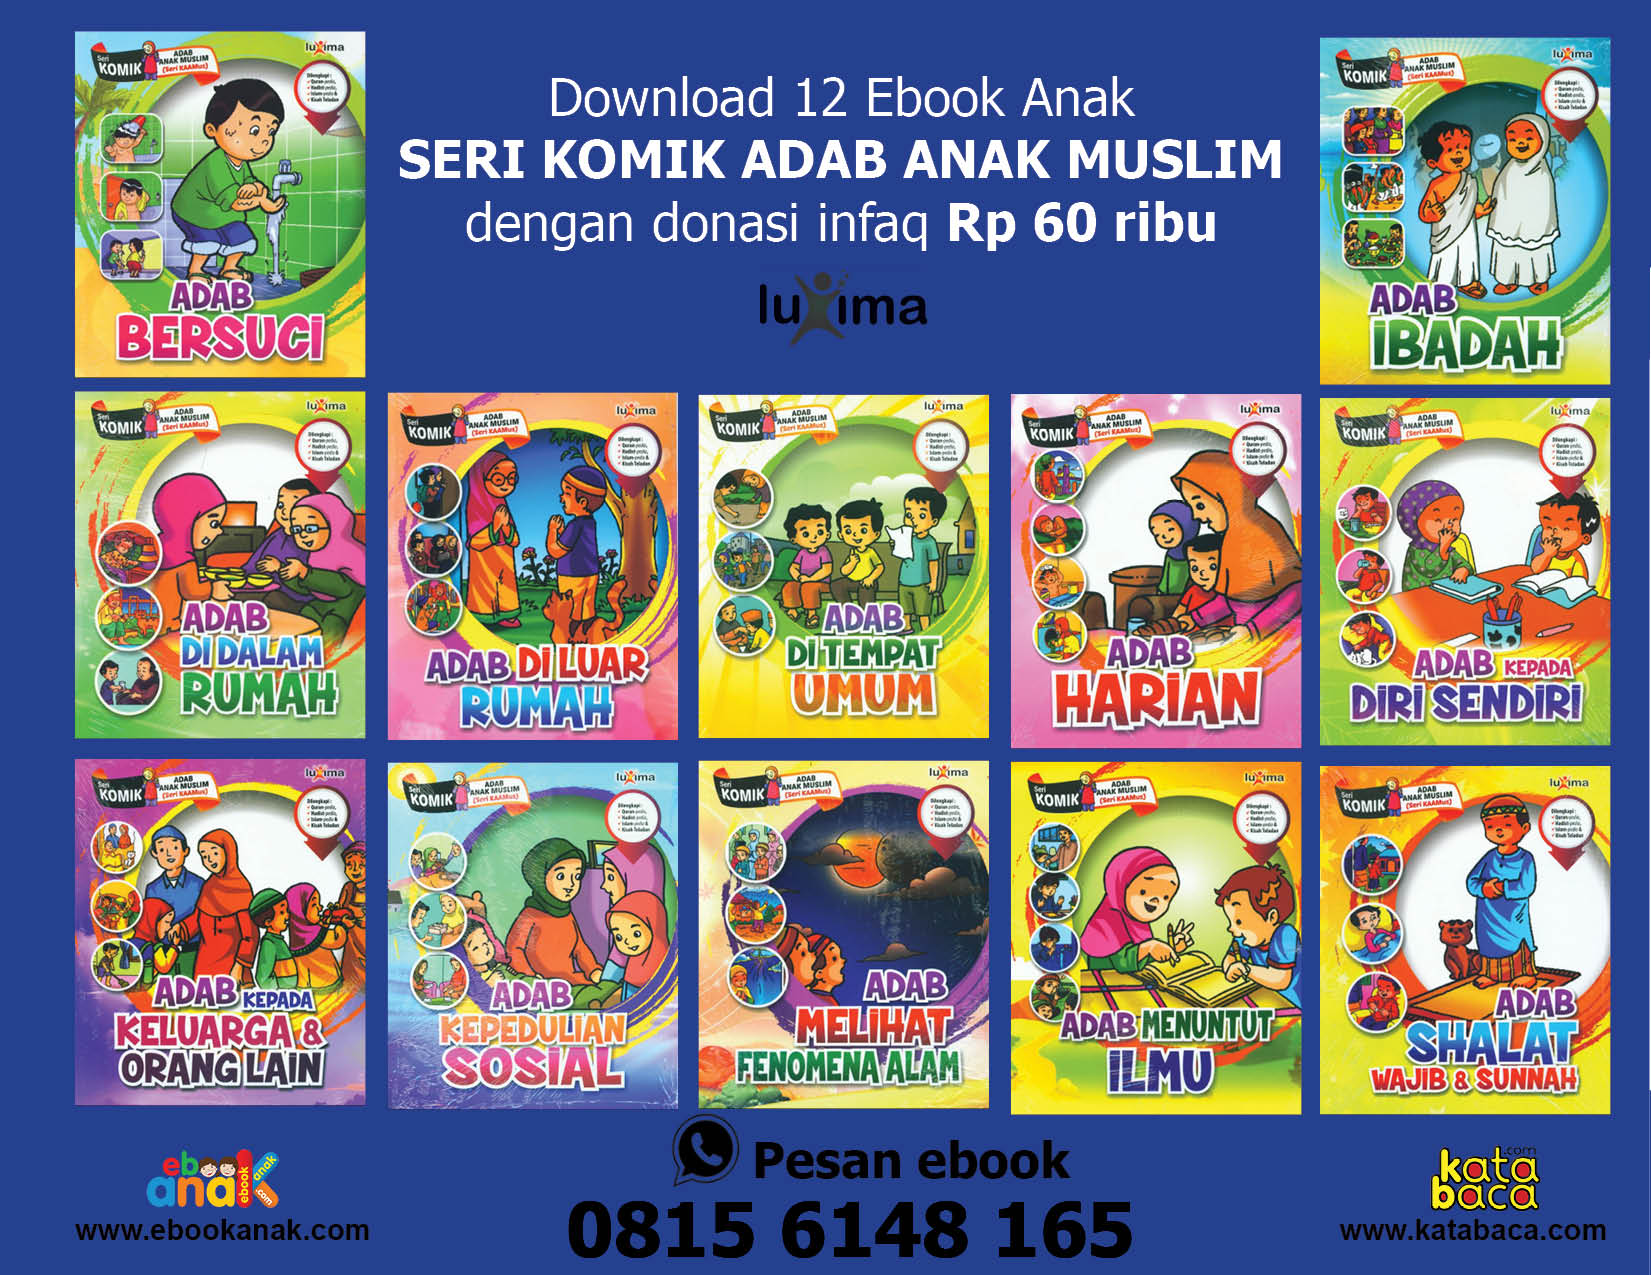 download 12 ebook anak seri komik adab anak muslim dengan donasi